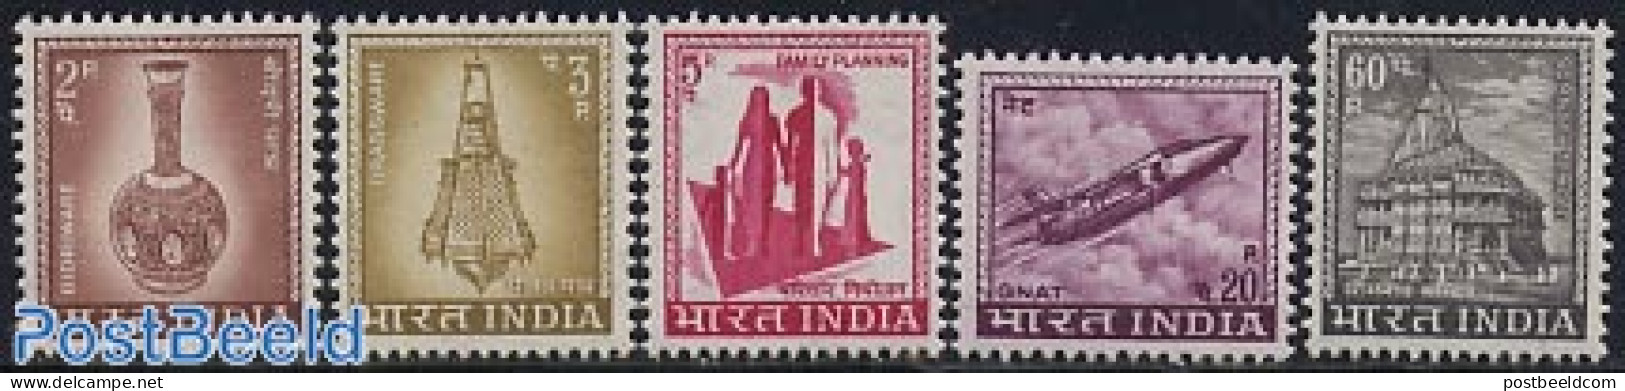 India 1967 Definitives 5v, Mint NH, Transport - Aircraft & Aviation - Art - Ceramics - Nuevos